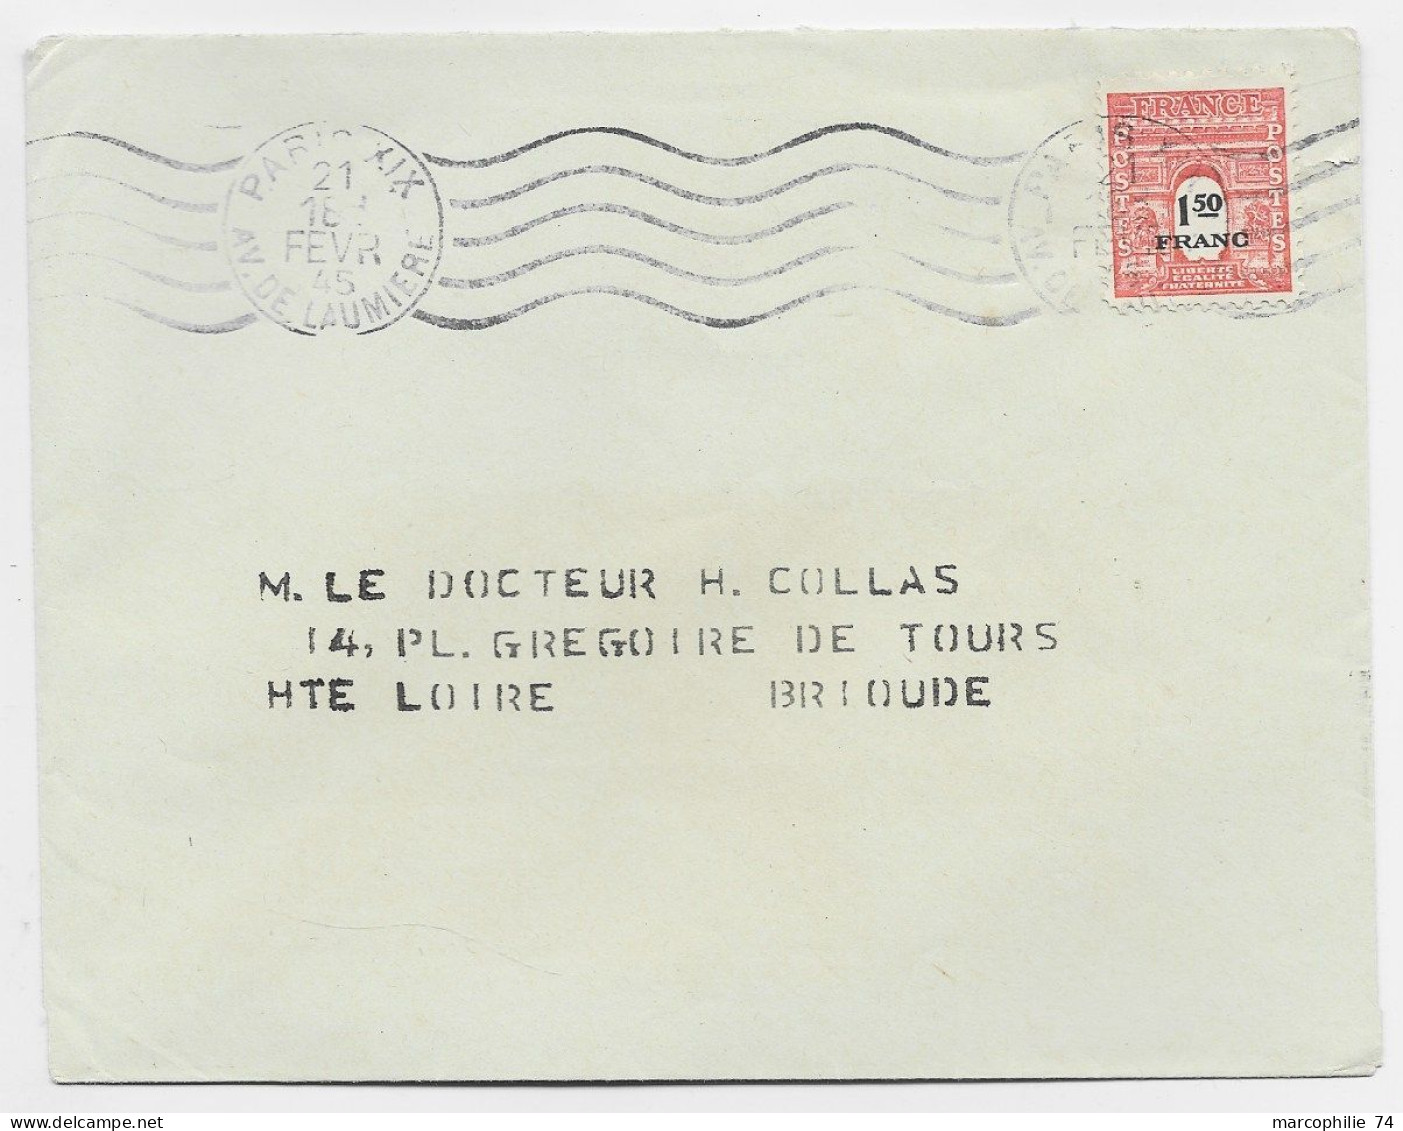 FRANCE ARC TRIOMPHE 1FR50 SEUL LETTRE MEC PARIS XII 21 FEVR 1945 USAGE COURT 17 JOURS - 1944-45 Triumphbogen